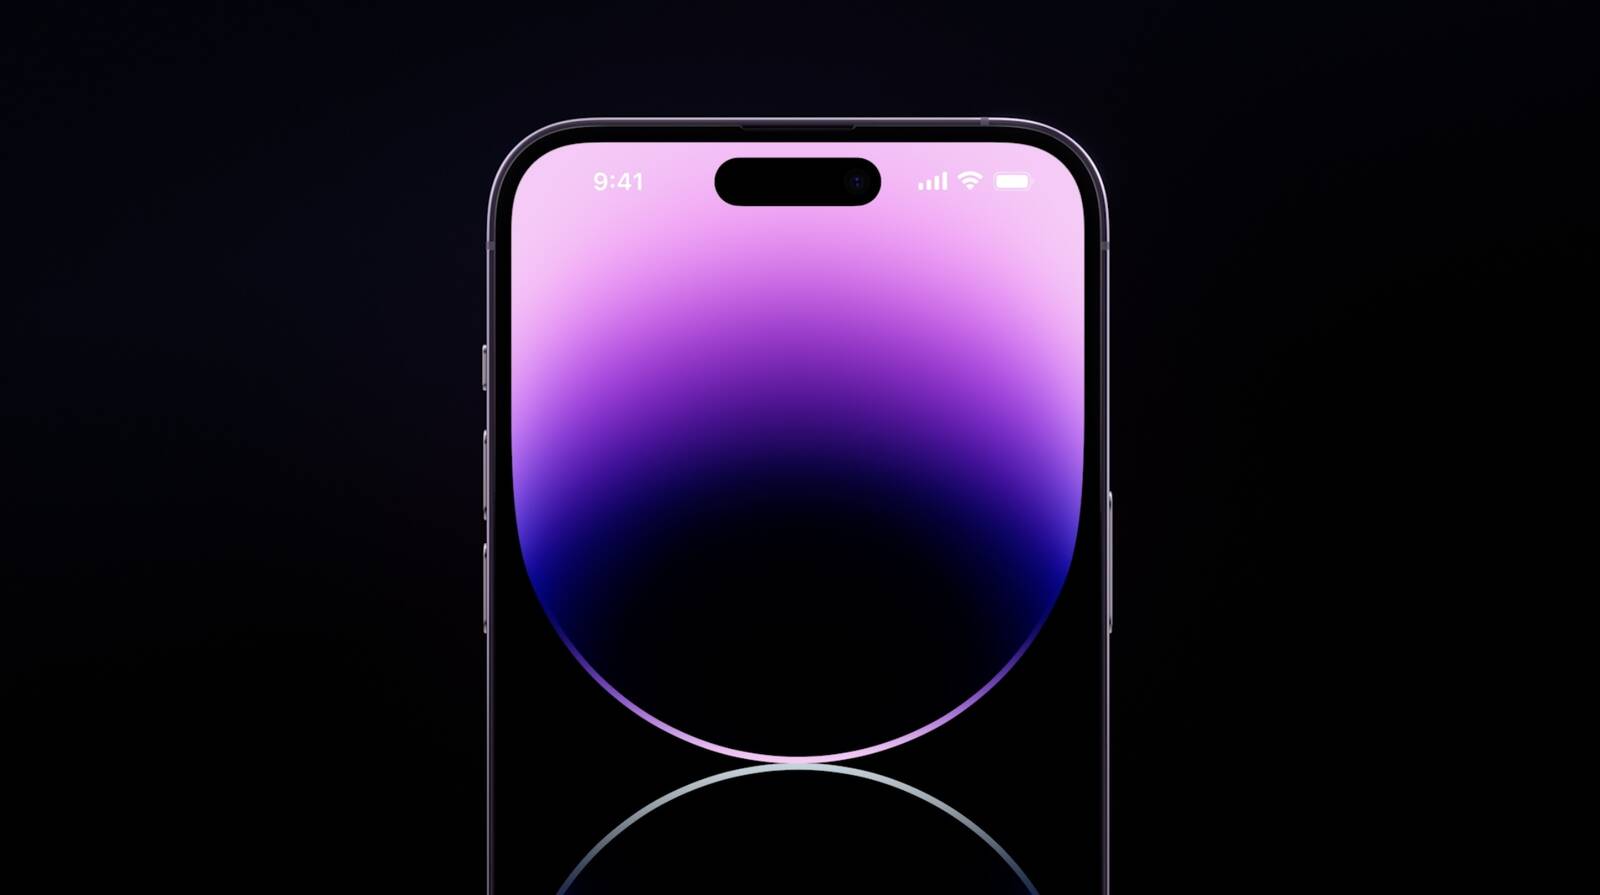 Màu tím đang trở thành xu hướng hot trên thị trường smartphone và iPhone 14 Pro Max của bạn cũng không ngoại lệ. Bạn sẽ thực sự yêu thích sự tươi sáng và cuốn hút của màu tím trên chiếc điện thoại mới nhất của mình.